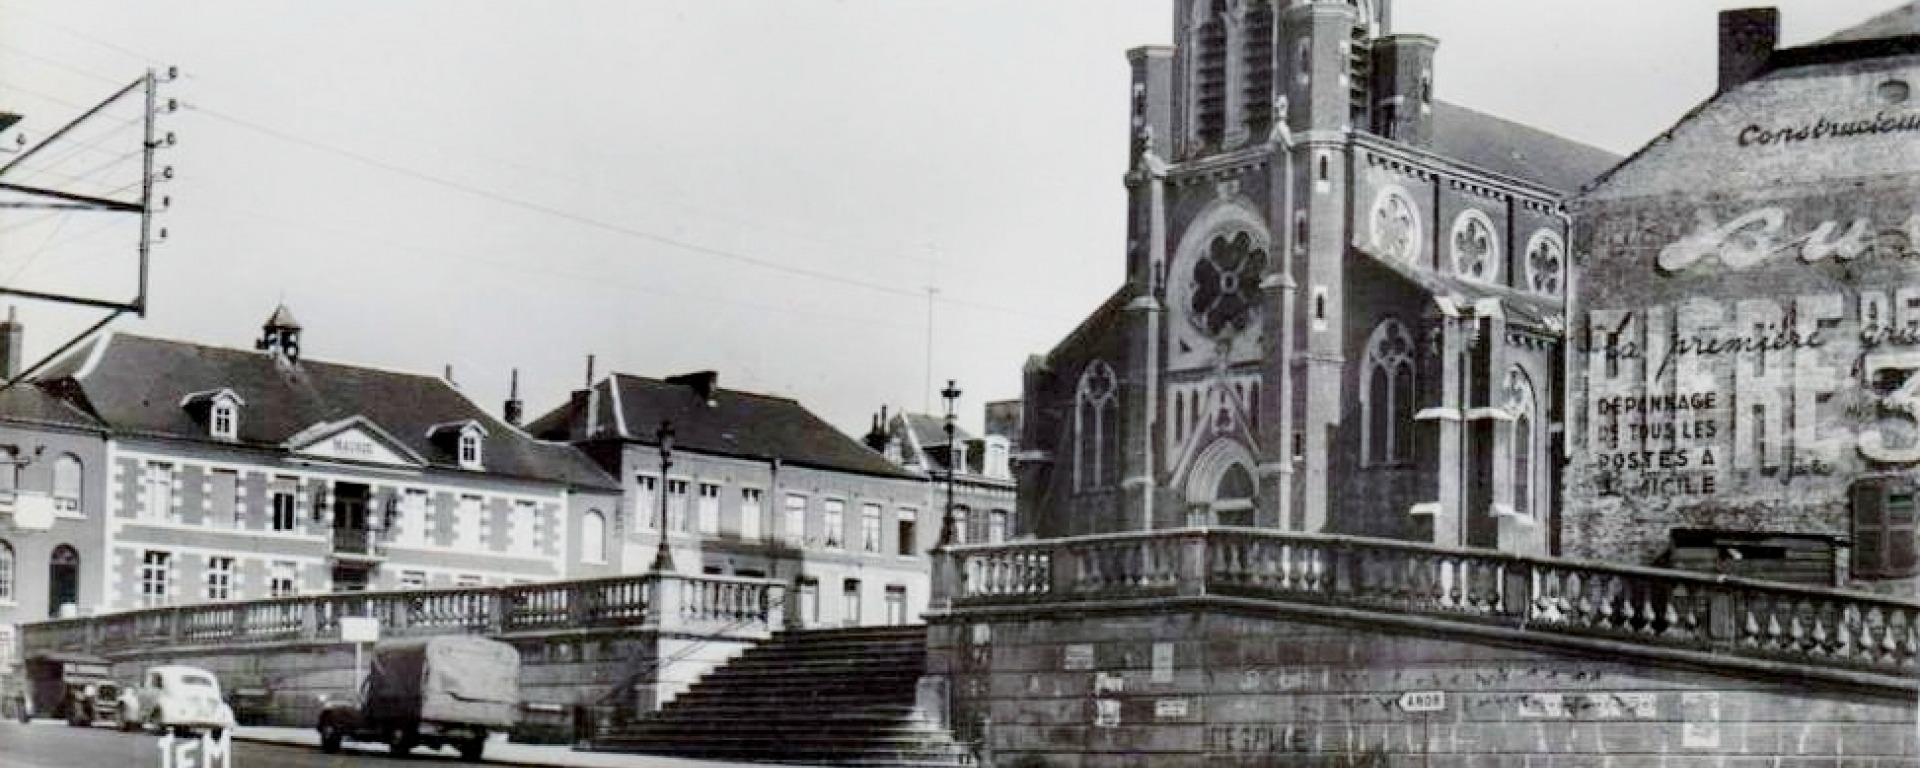 L'église Saint Pierre telle qu'elle était dans les années cinquante.
© CHRIS NORD